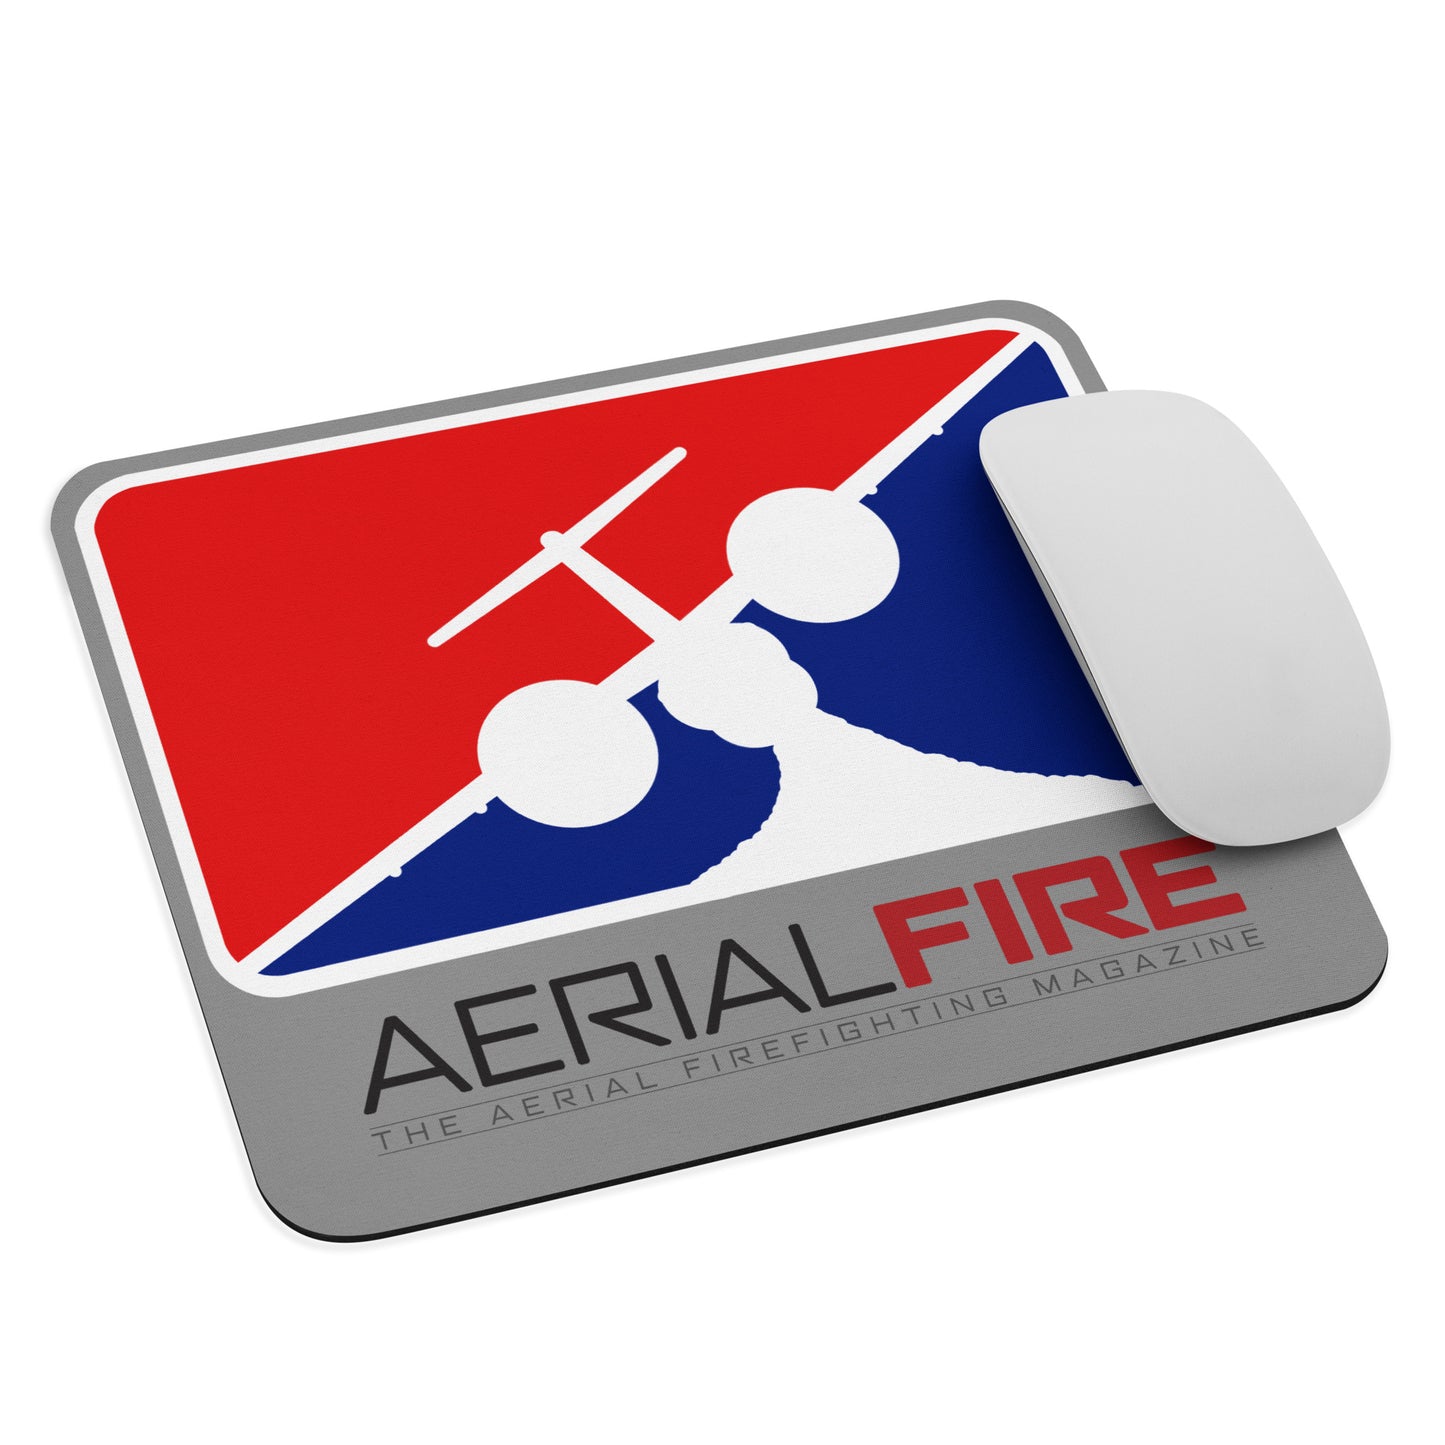 AerialFire Q400AT Mouse pad